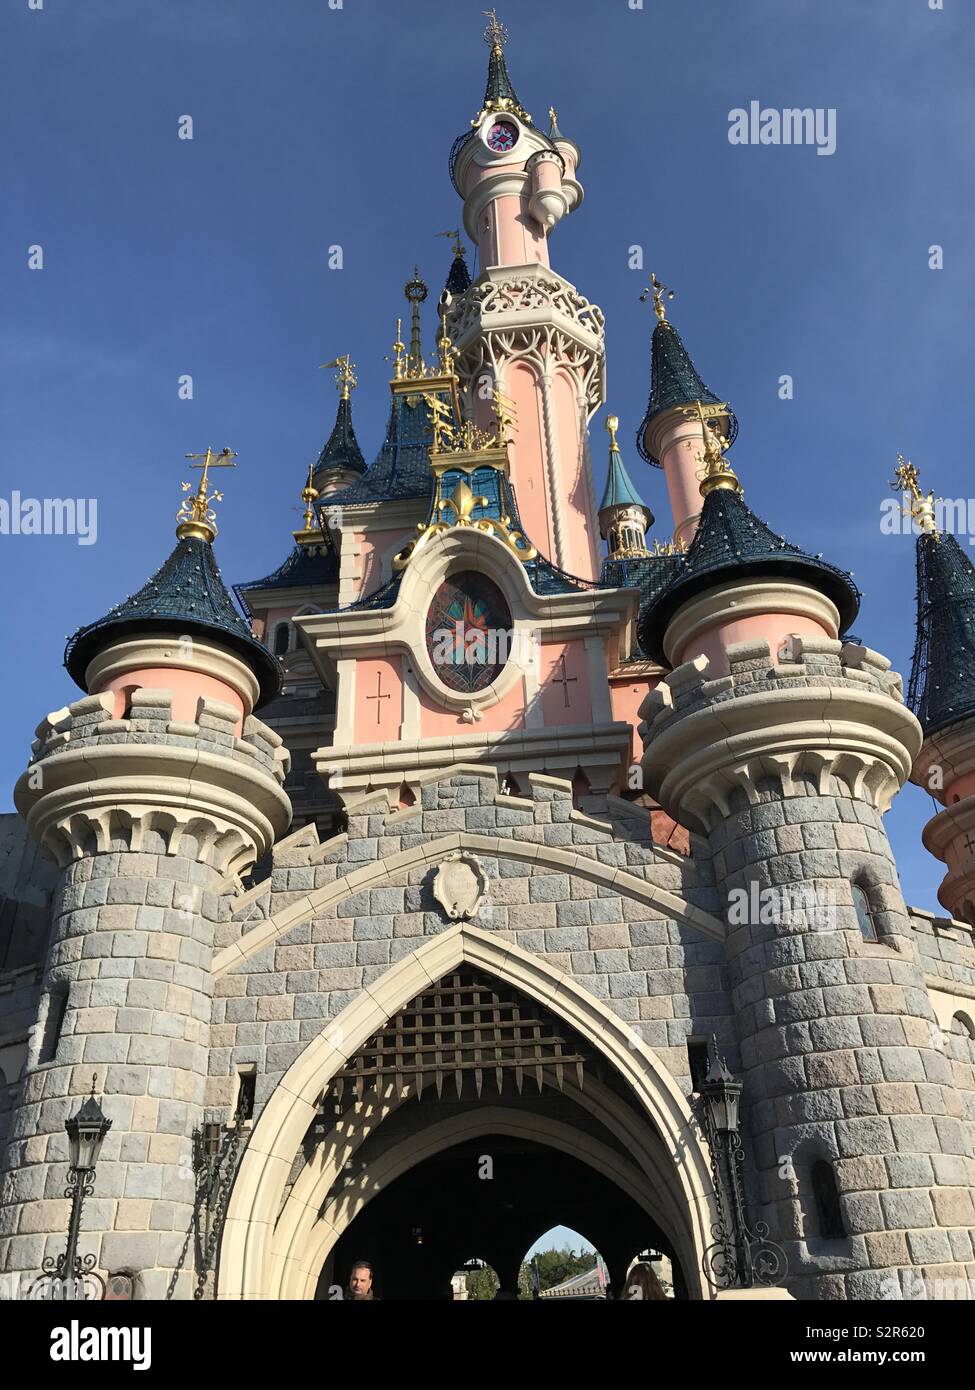 Princess Castle - Disney land Paris Stock Photo